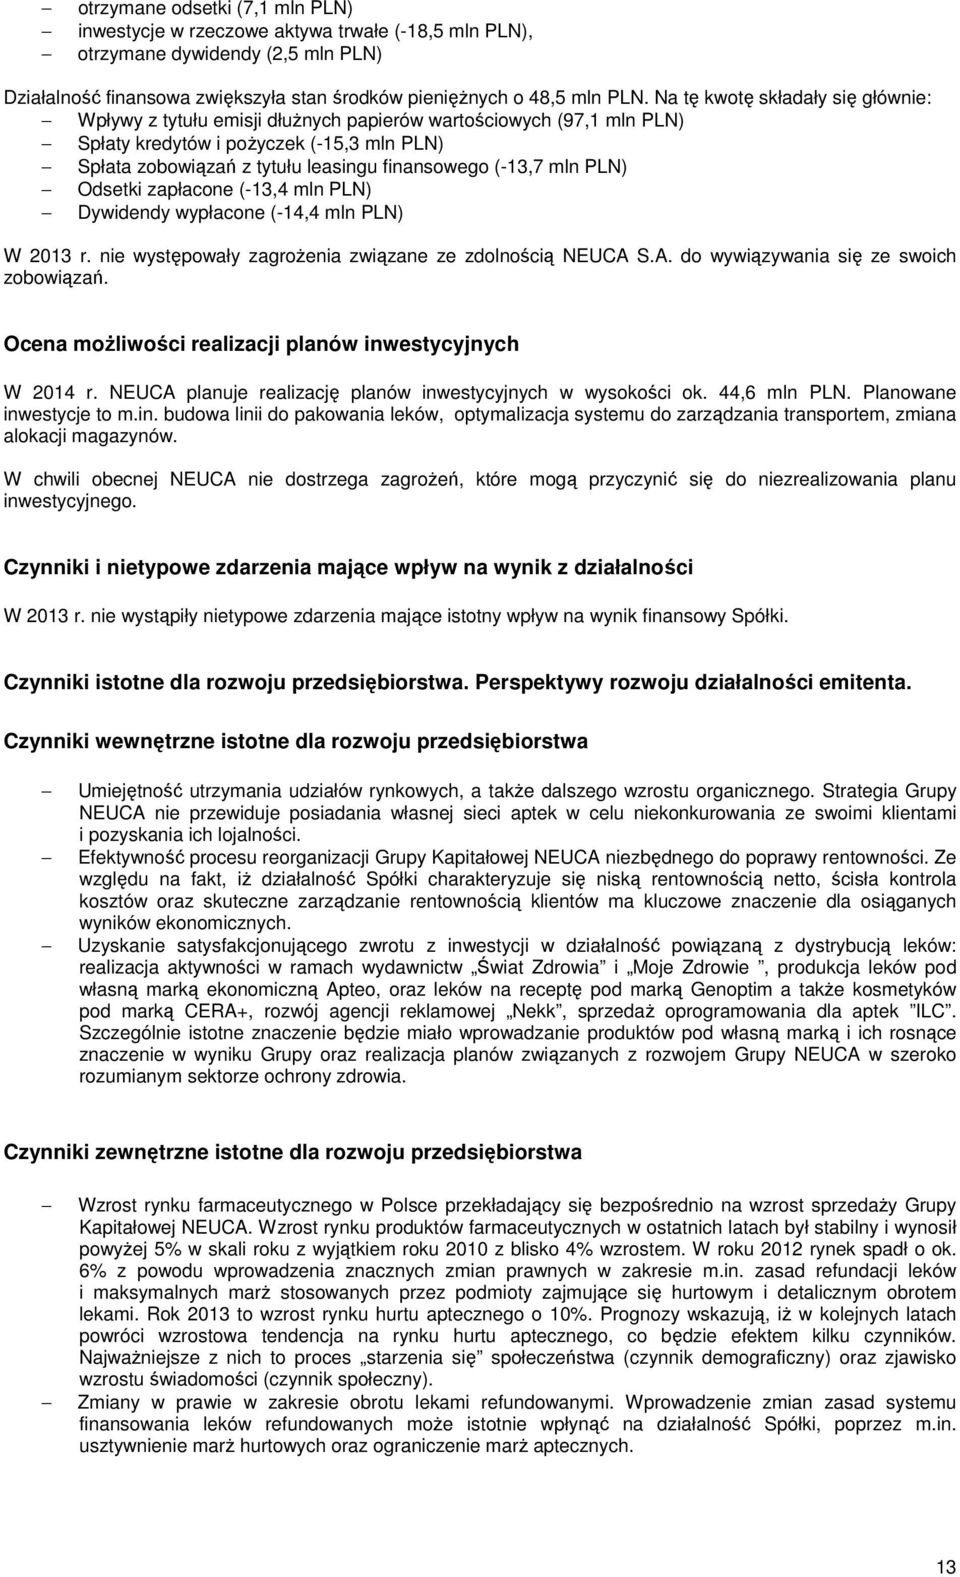 (-13,7 mln PLN) Odsetki zapłacone (-13,4 mln PLN) Dywidendy wypłacone (-14,4 mln PLN) W 2013 r. nie występowały zagrożenia związane ze zdolnością NEUCA S.A. do wywiązywania się ze swoich zobowiązań.